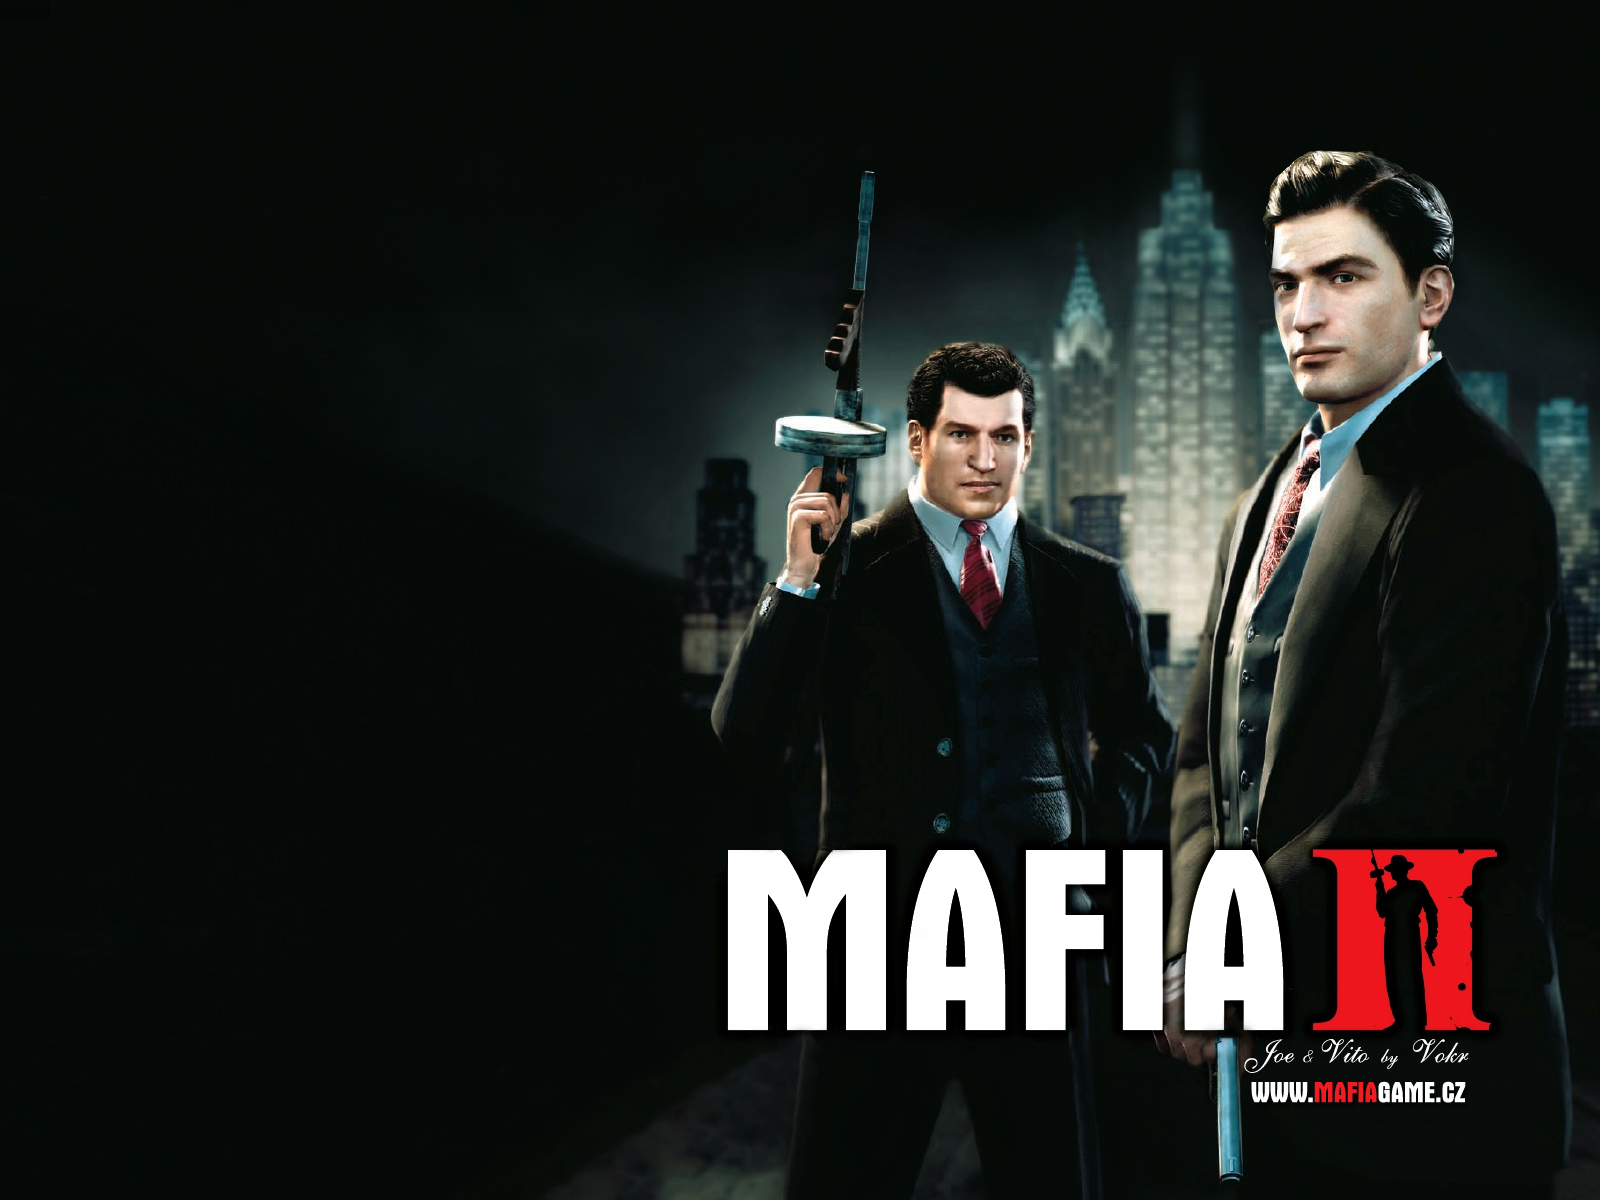 Novinky   Mafia 2 wallpaper 3 by Vokr Mafia Mafia 2 Vokrcom